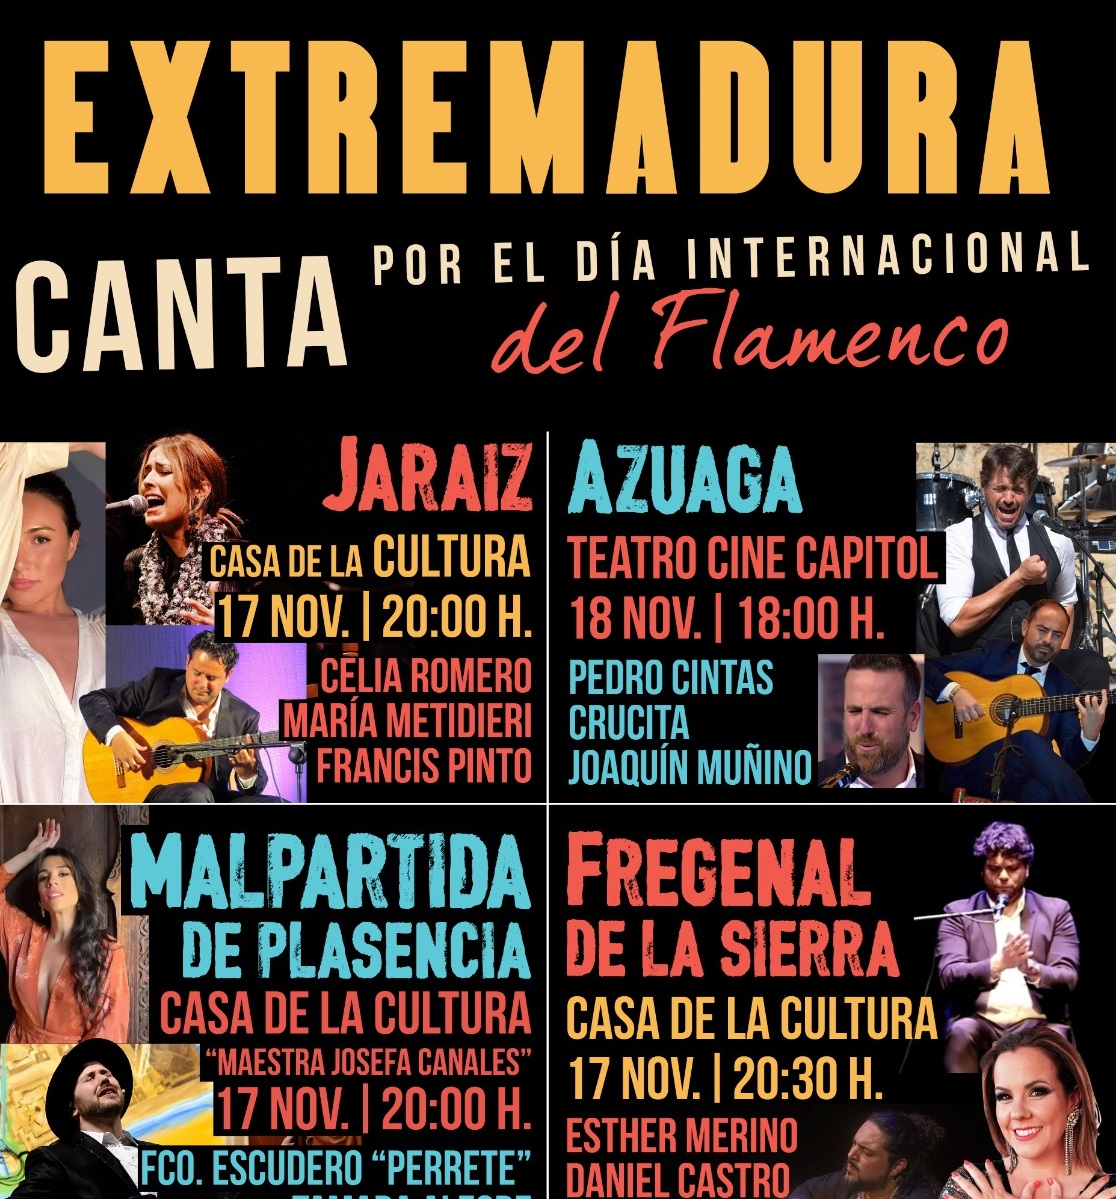 Image 1 of article Extremadura celebra el Día Internacional del Flamenco con cuatro conciertos en la región y uno en Lisboa